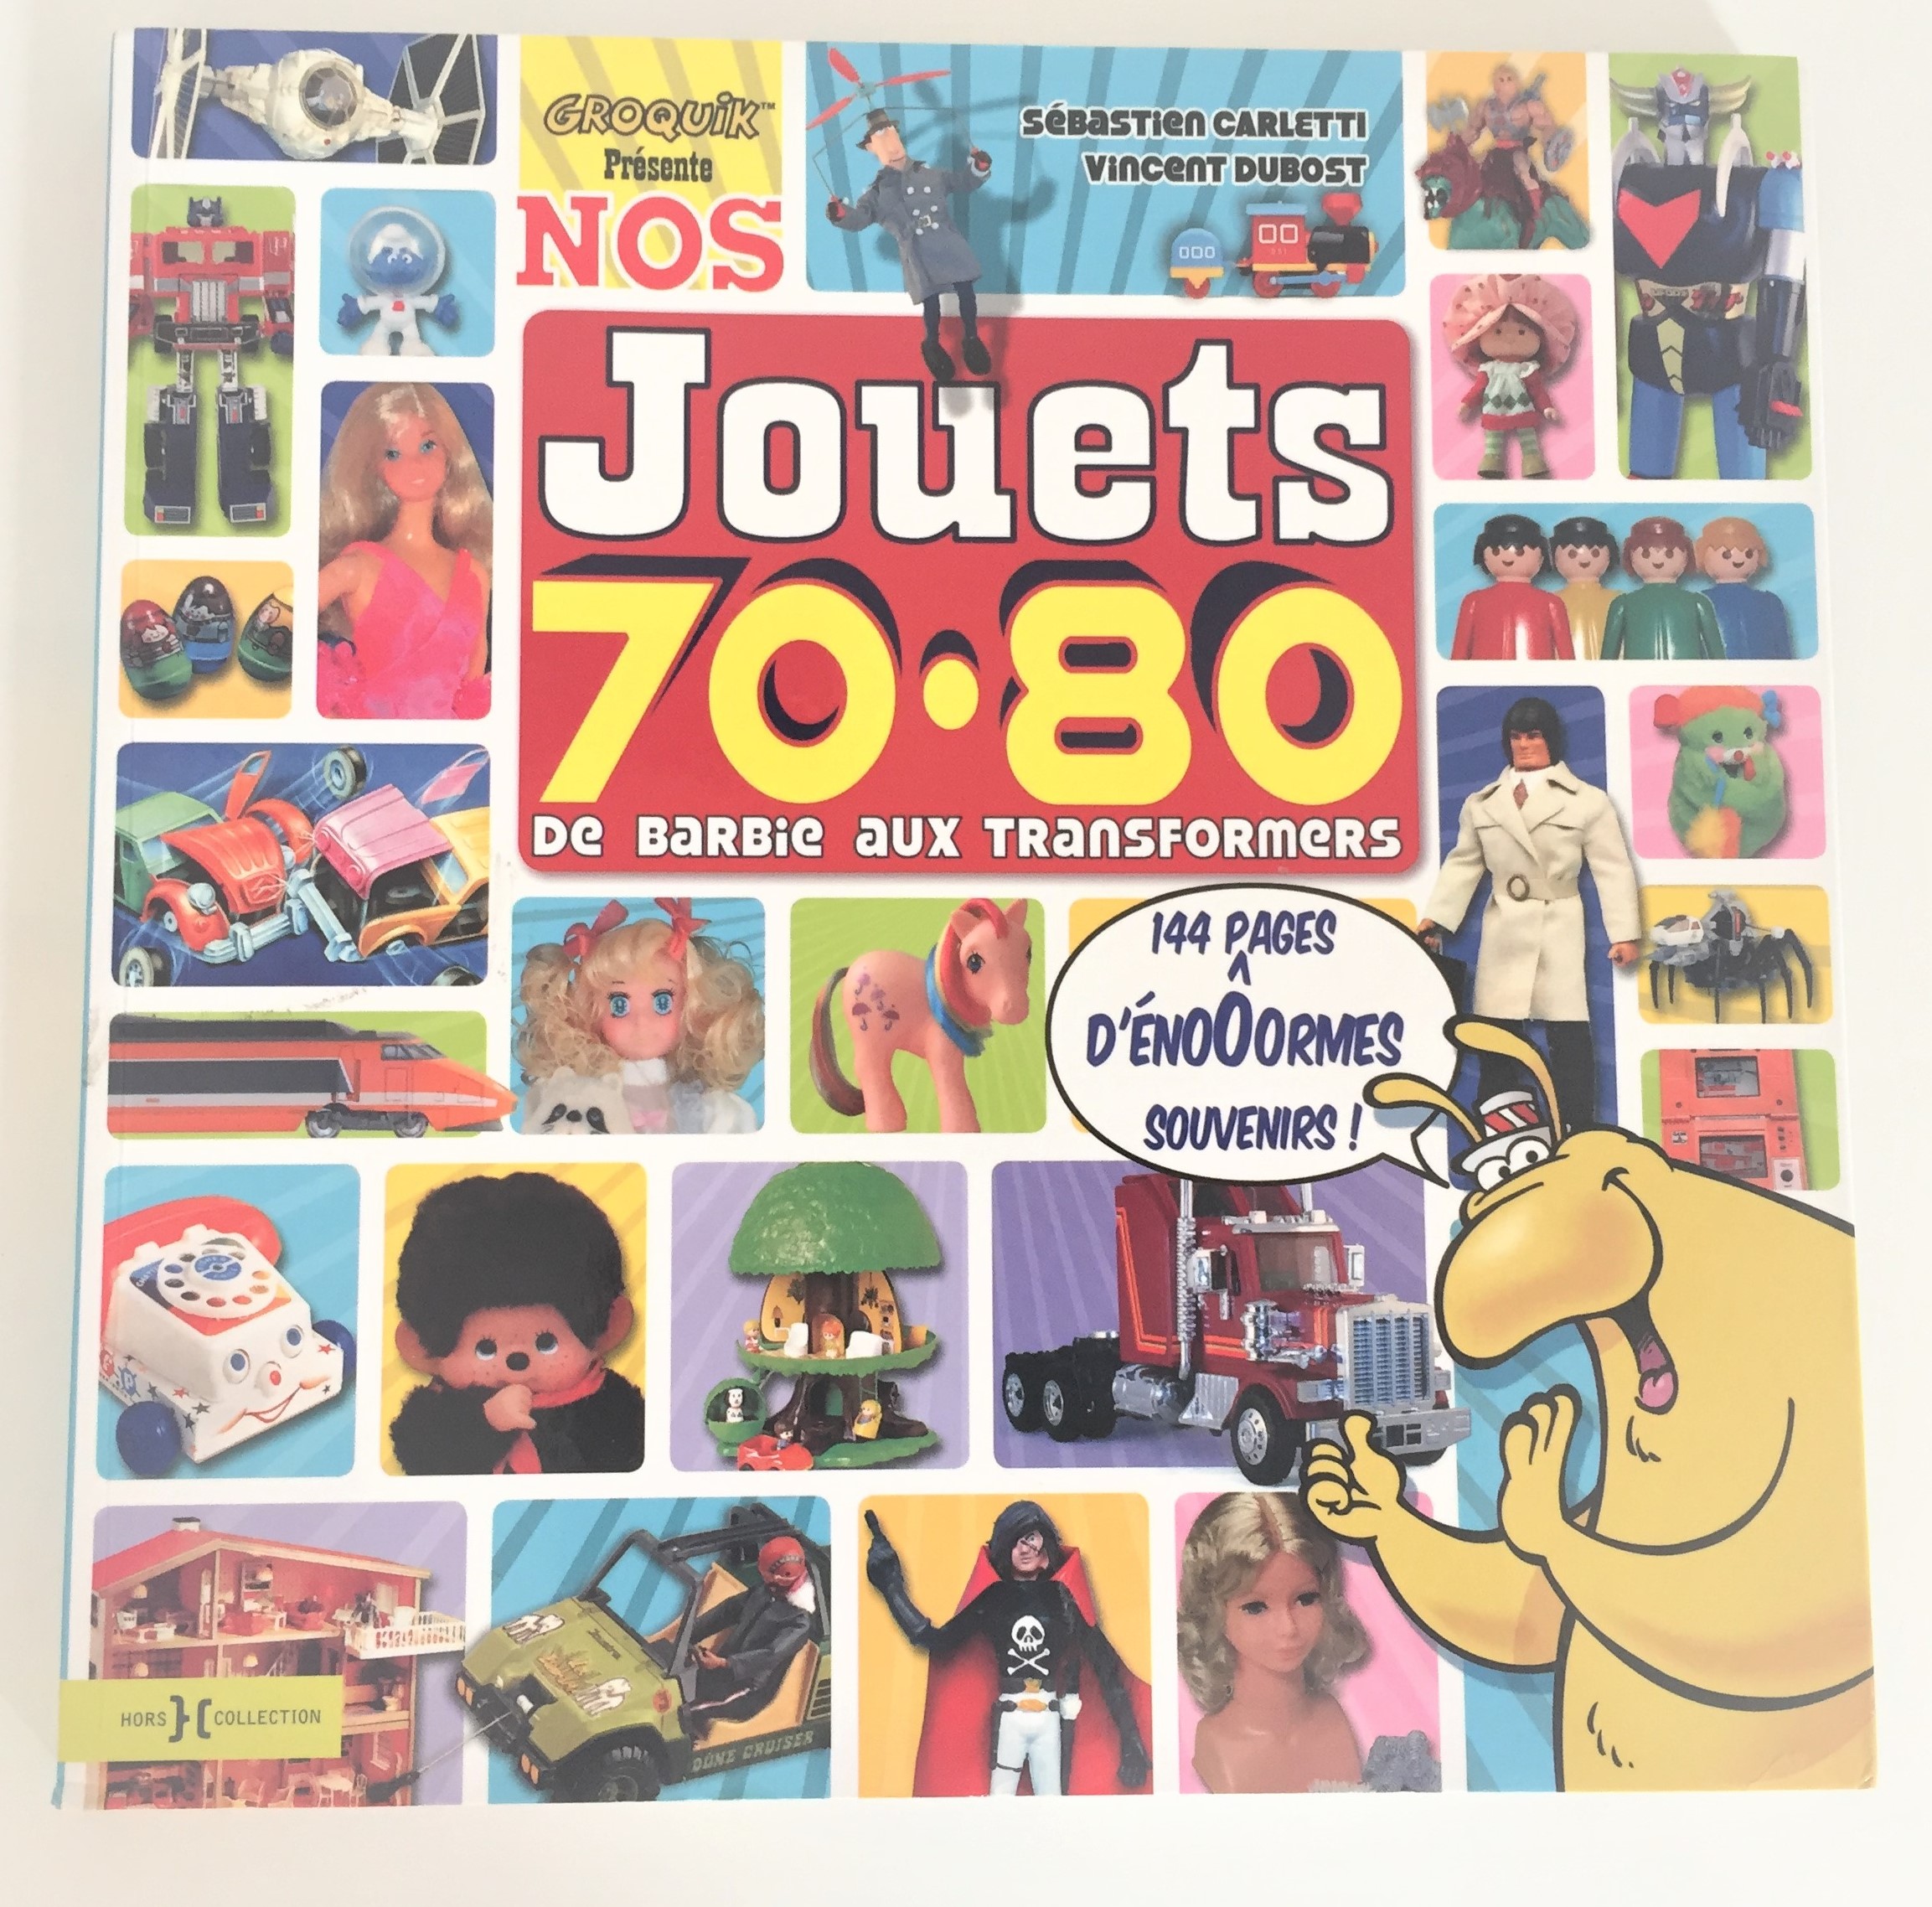 Les Popples - Les jouets des années 80-90